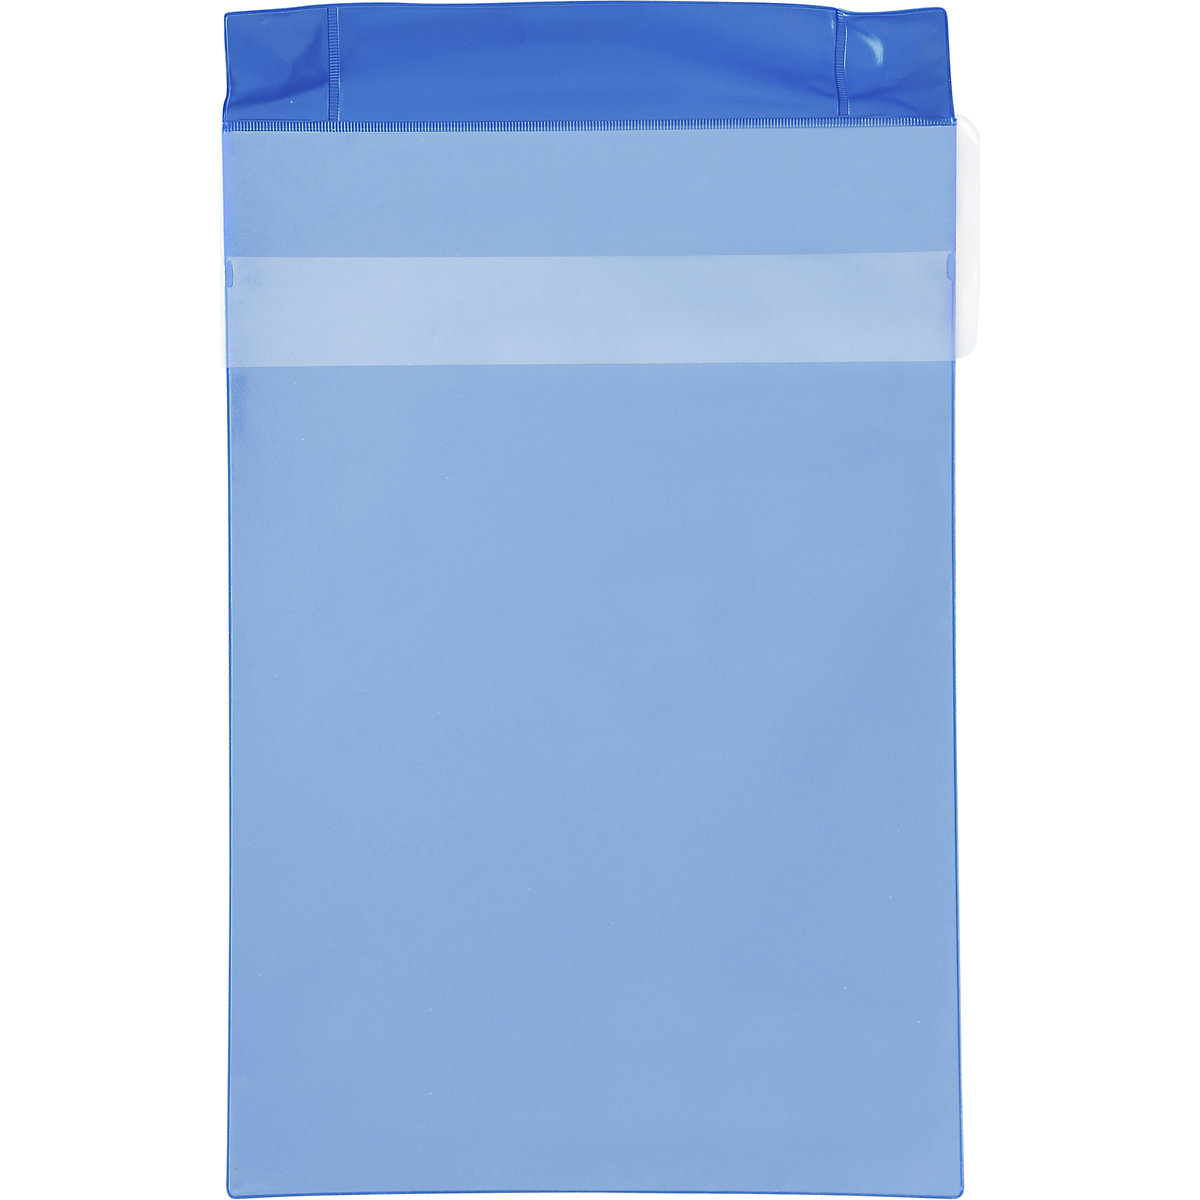 Magnetni žep Neodym, pokončen format, s pokrovom za zaščito pred dežjem, DE 25 kosov, modre barve, DIN A4, od 2 DE-8